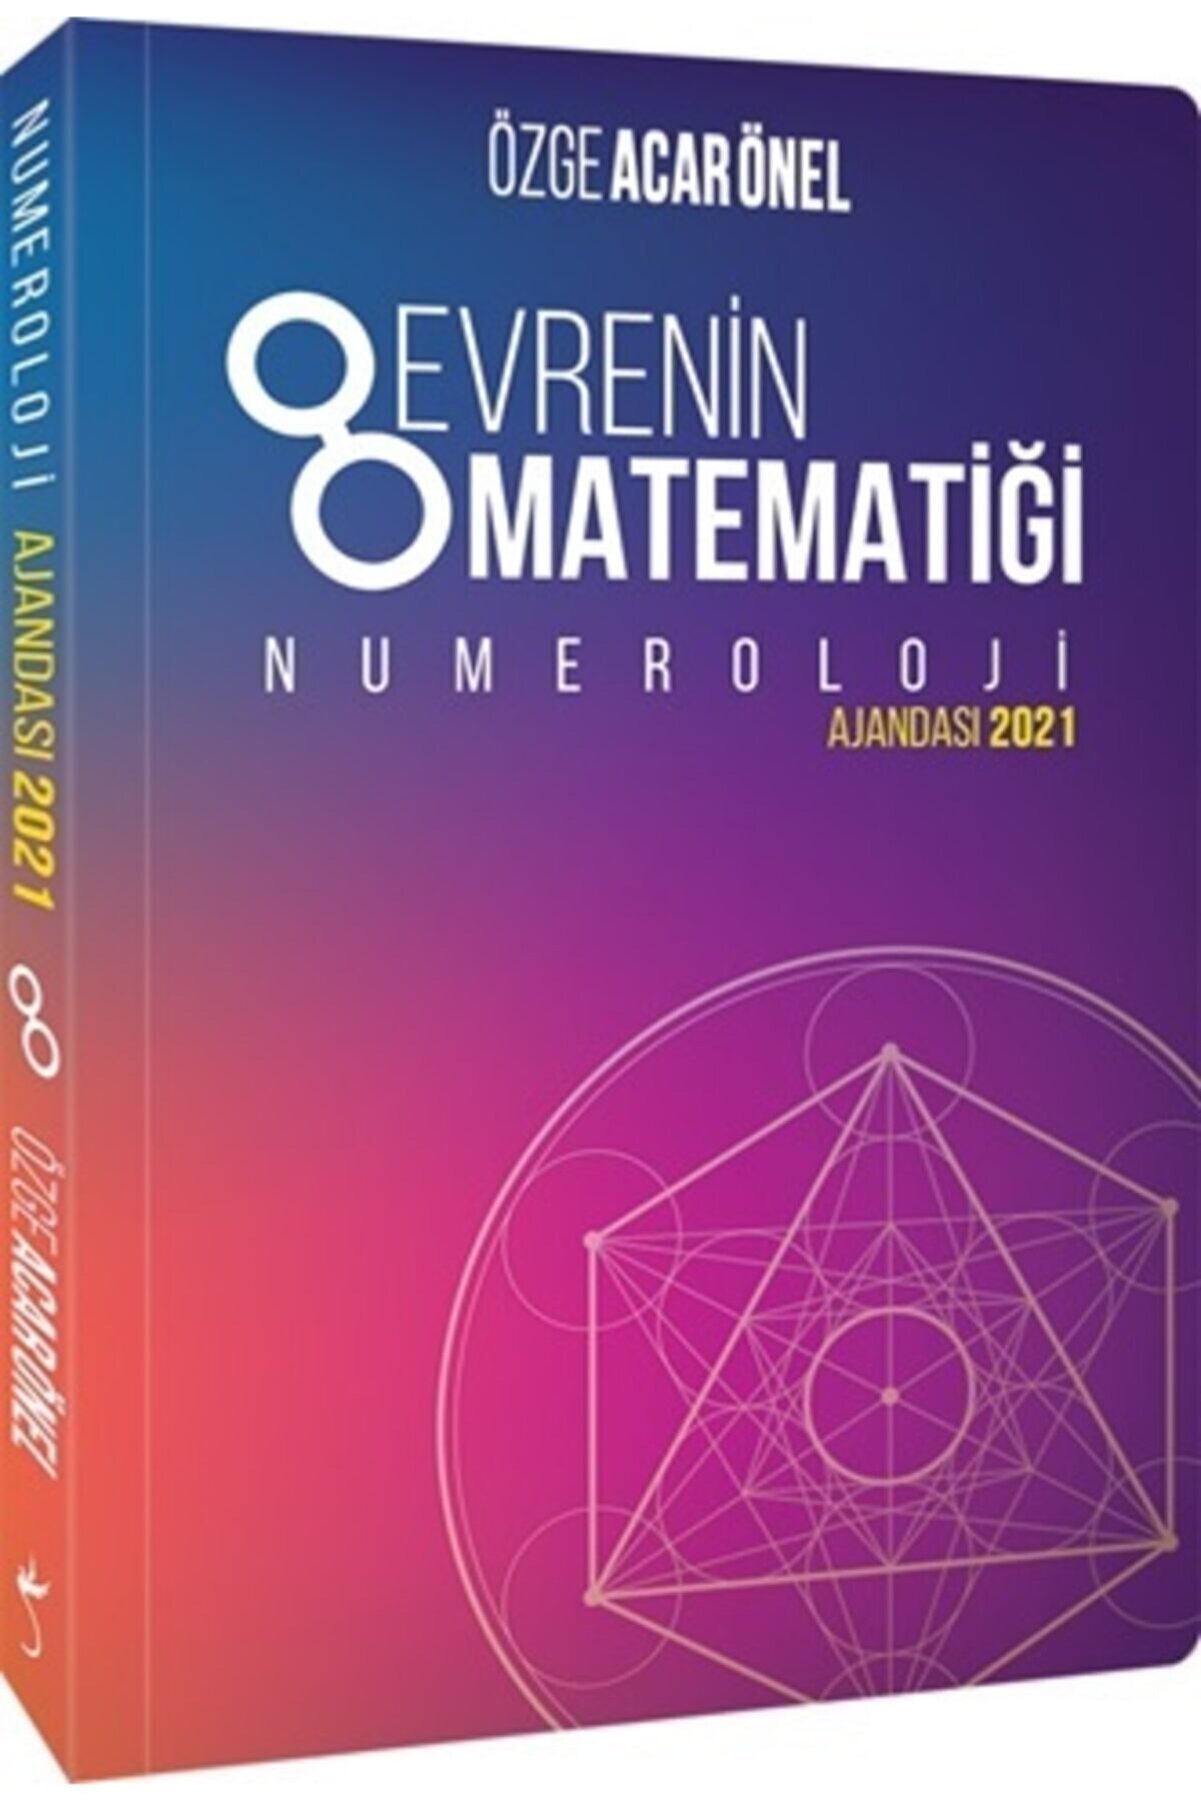 İndigo Kitap Evrenin Matematiği Numeroloji Ajandası 2021 Özge Acar Önel